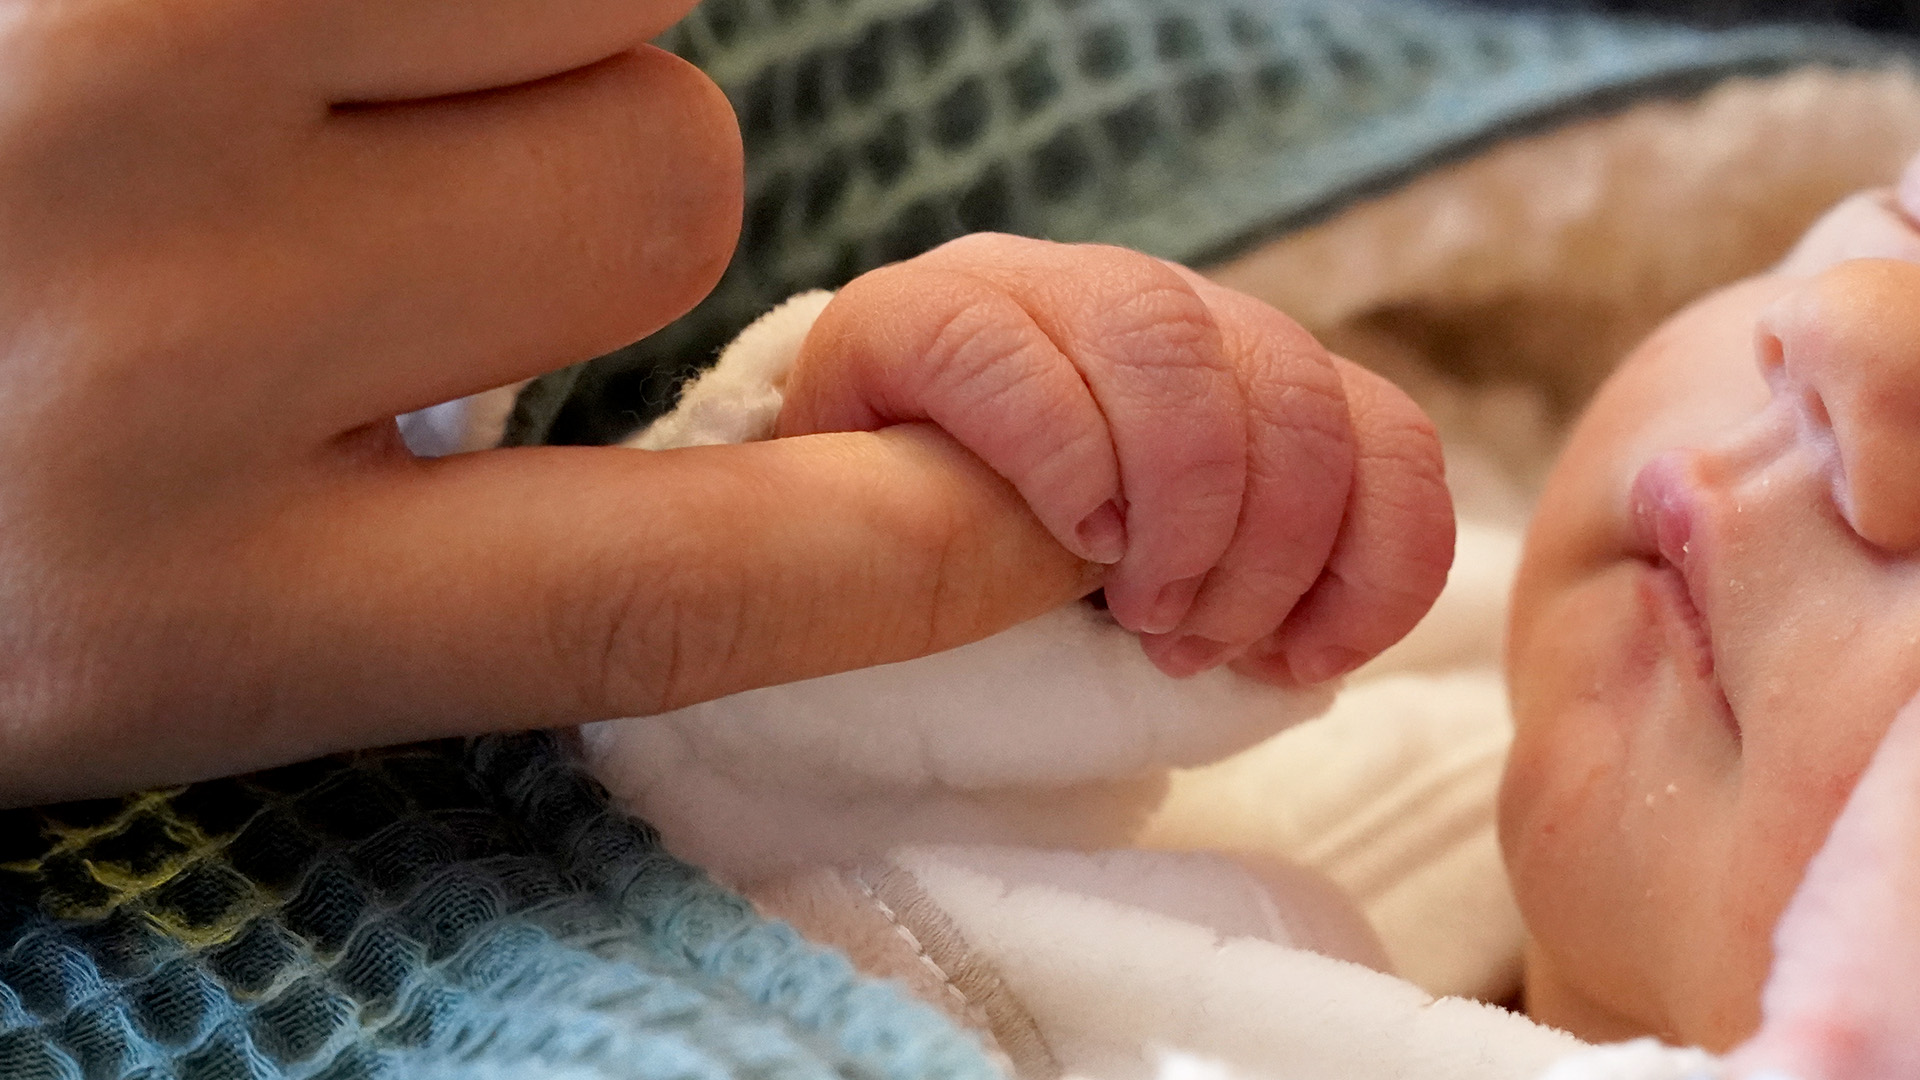 Symbolbnild:Ein frisch geborener Säugling greift einen Finger seiner Mutter.(Quell:picture alliance/dpa/M.Brandt)